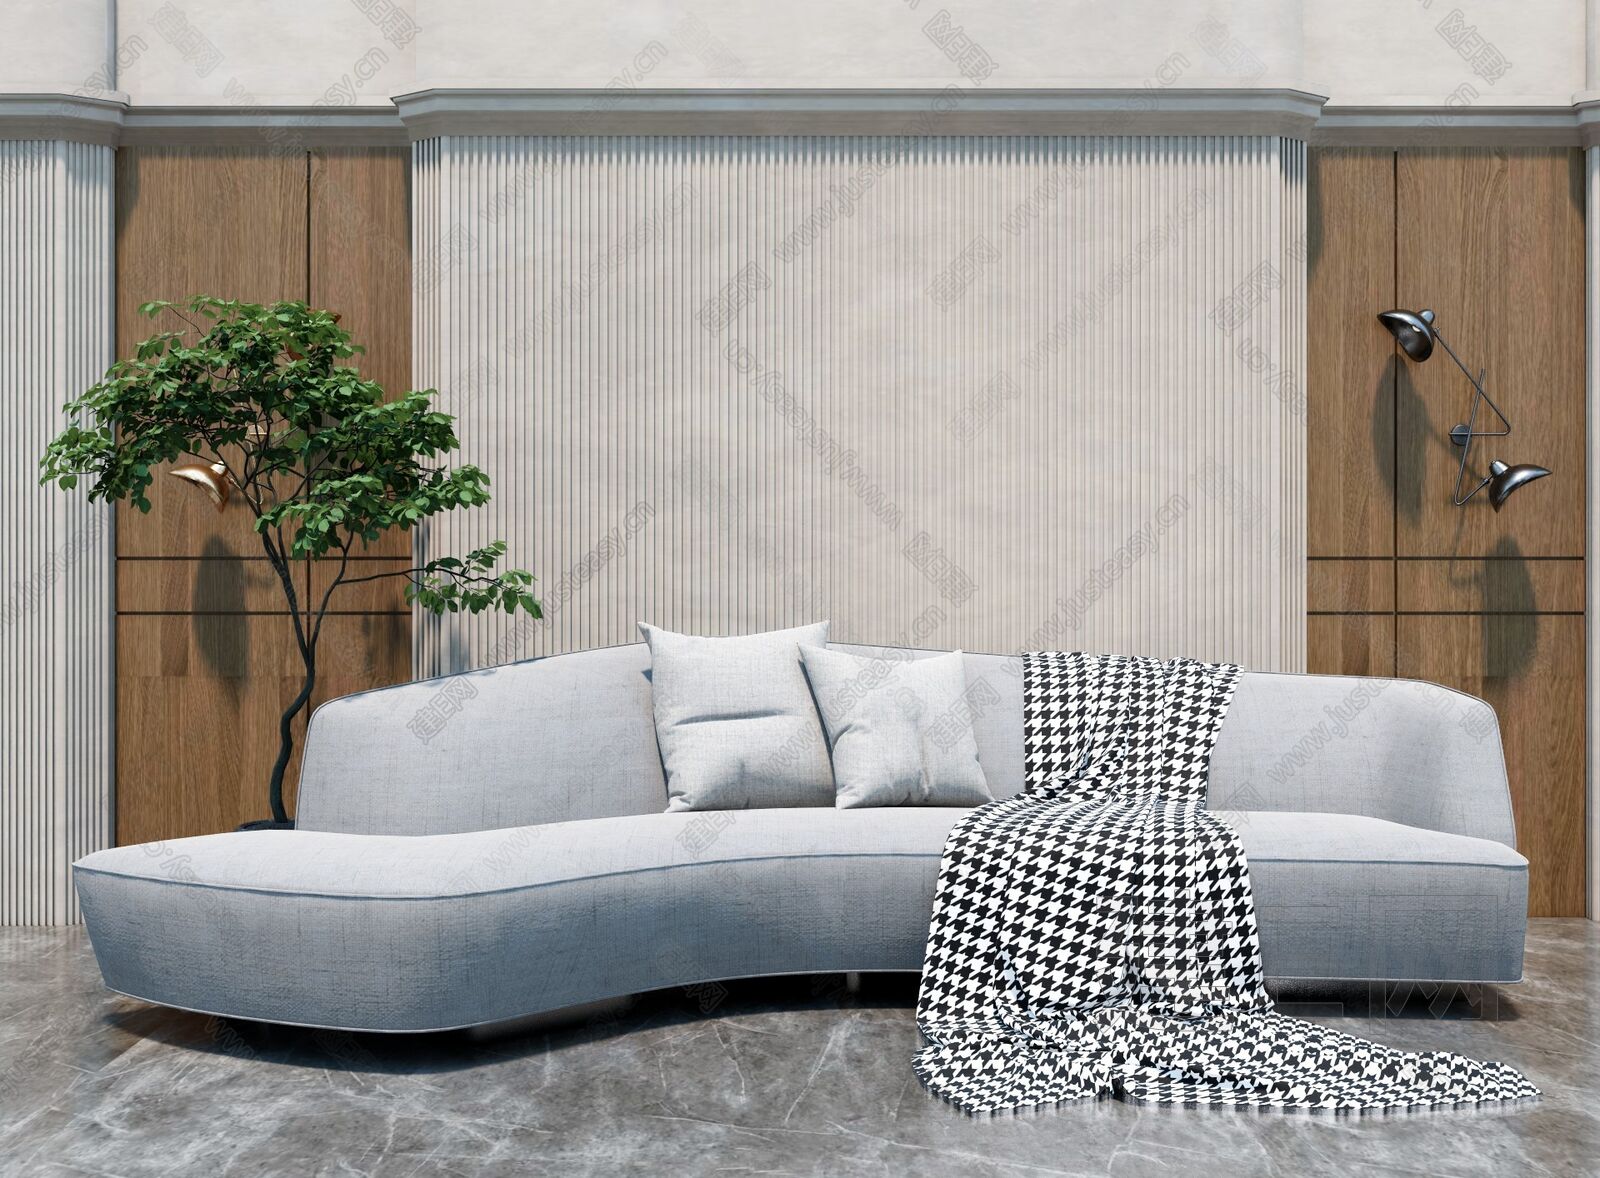 法式轻奢浪漫风格客厅弧形沙发装修效果图_别墅设计图